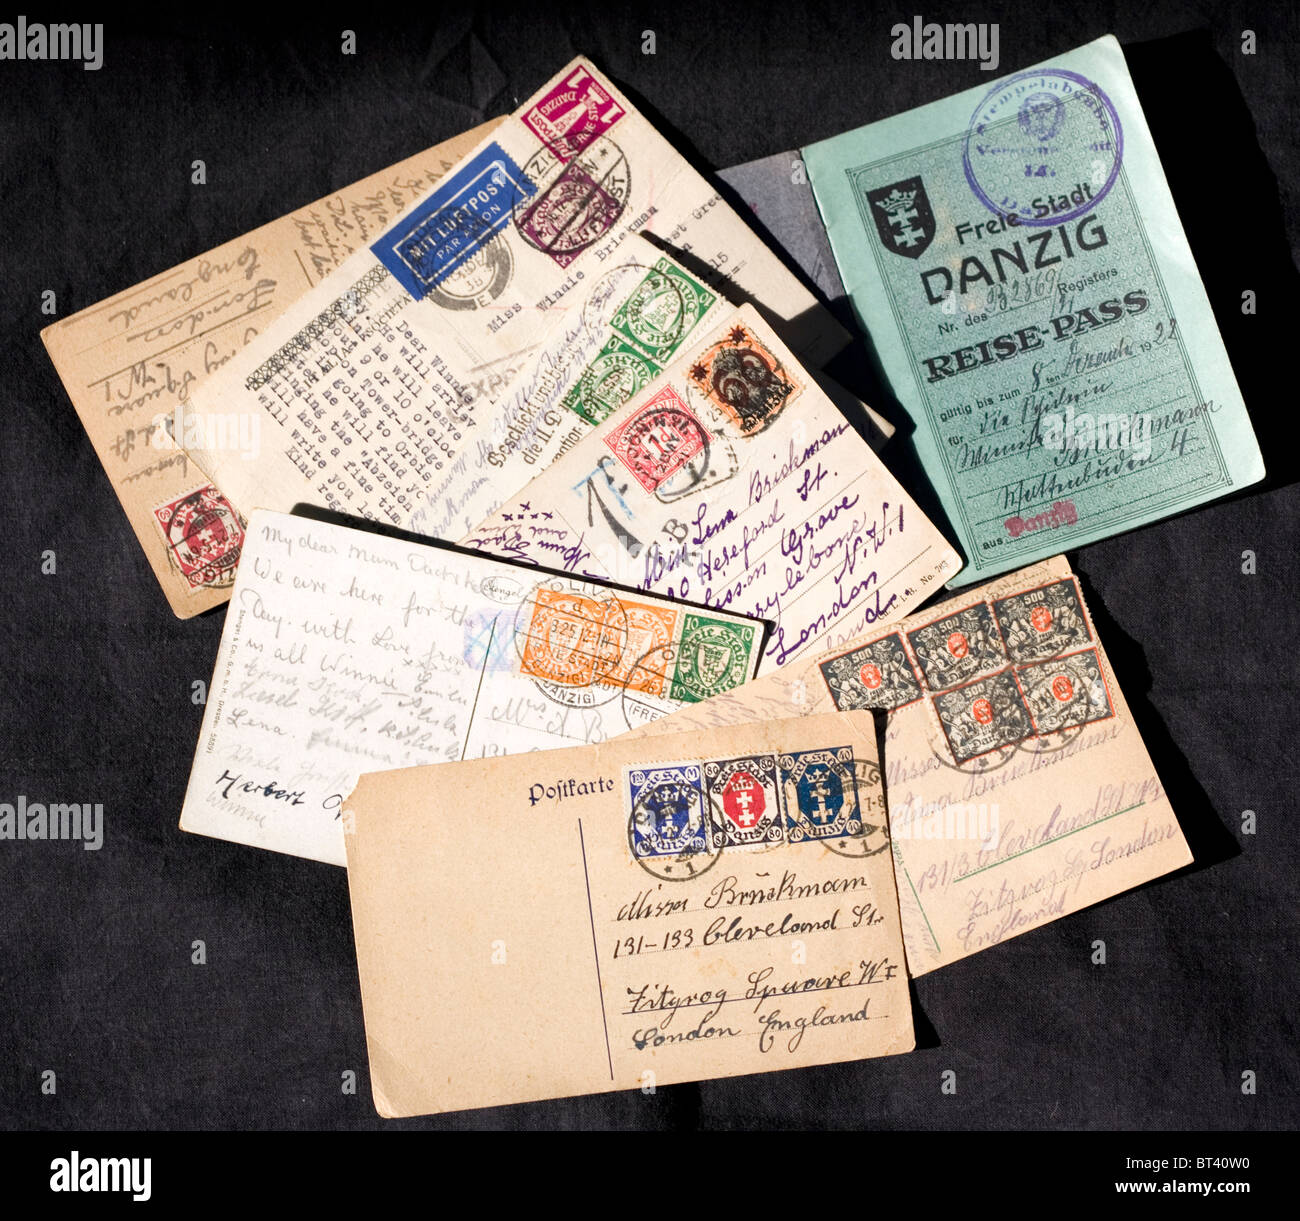 Freistadt Danzig (jetzt Gdansk in Polen). Zwischen den beiden Weltkriegen war es eine freie Stadt. Collage von Briefmarken und Pass aus jener Zeit. Stockfoto